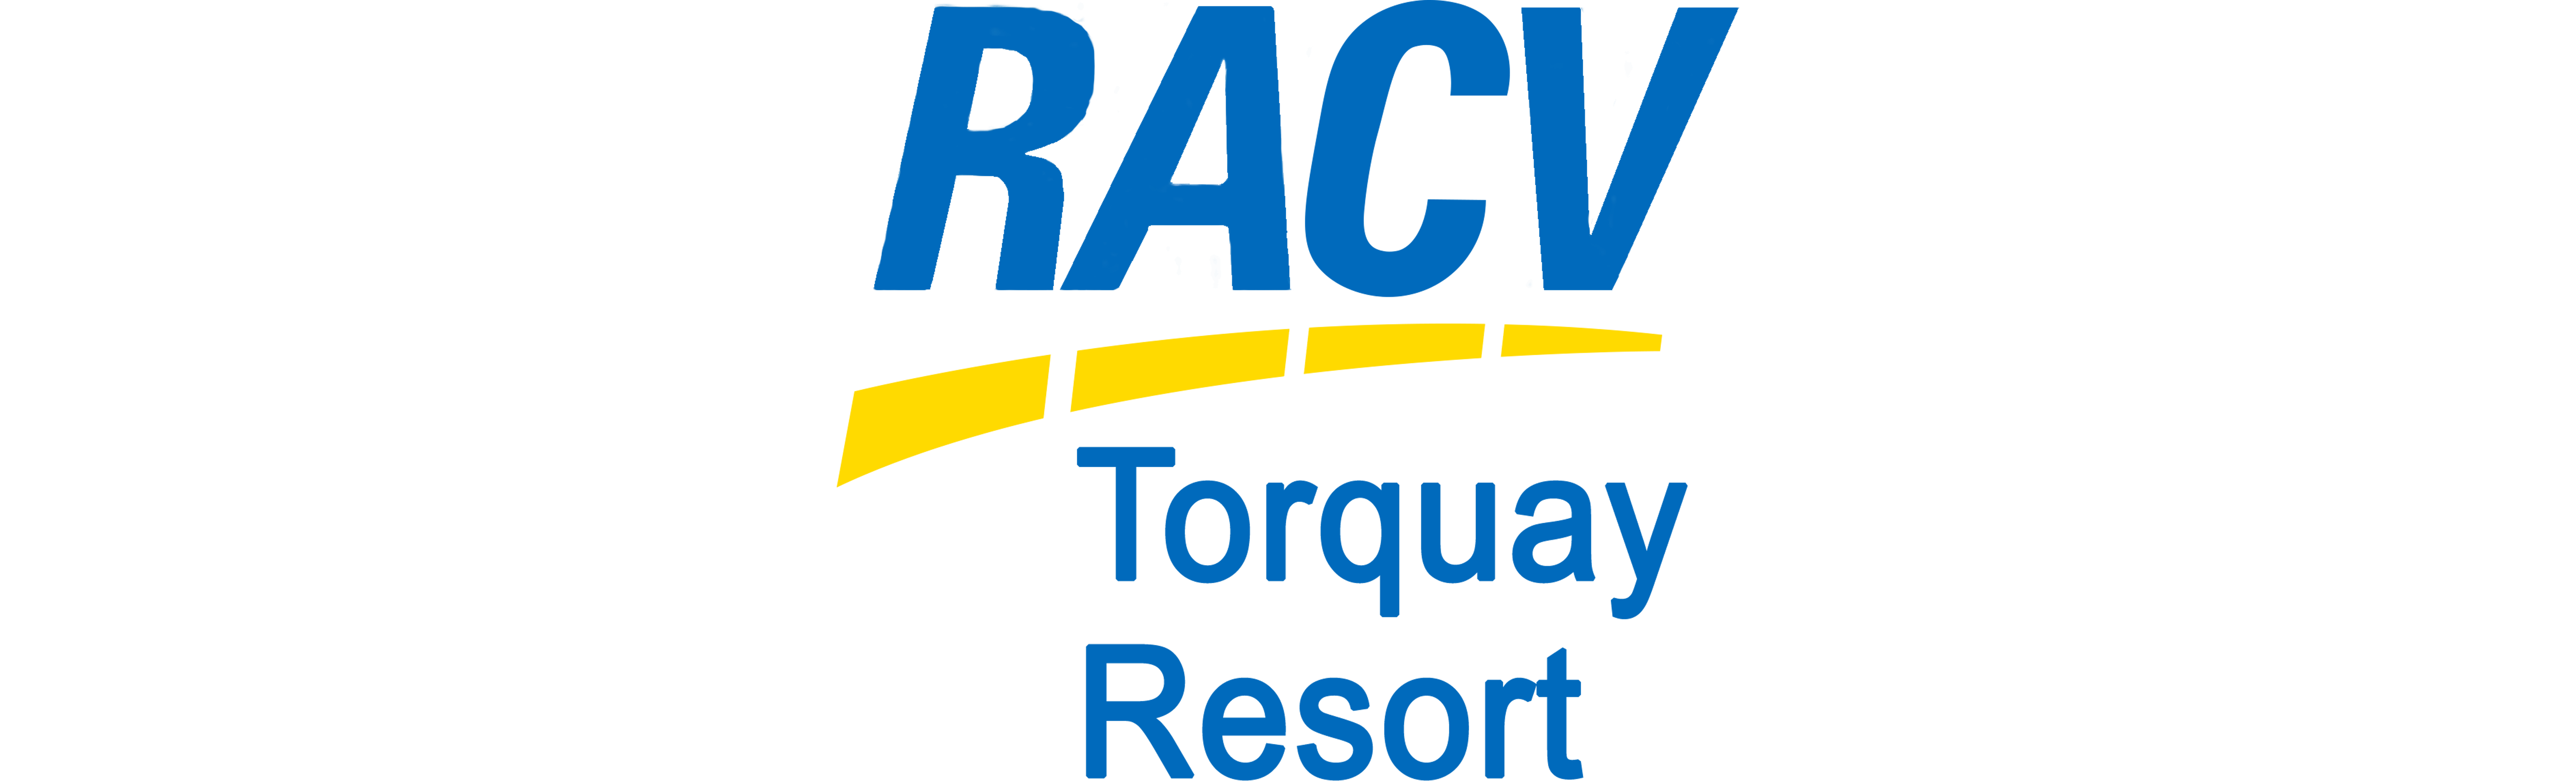 rscv resort